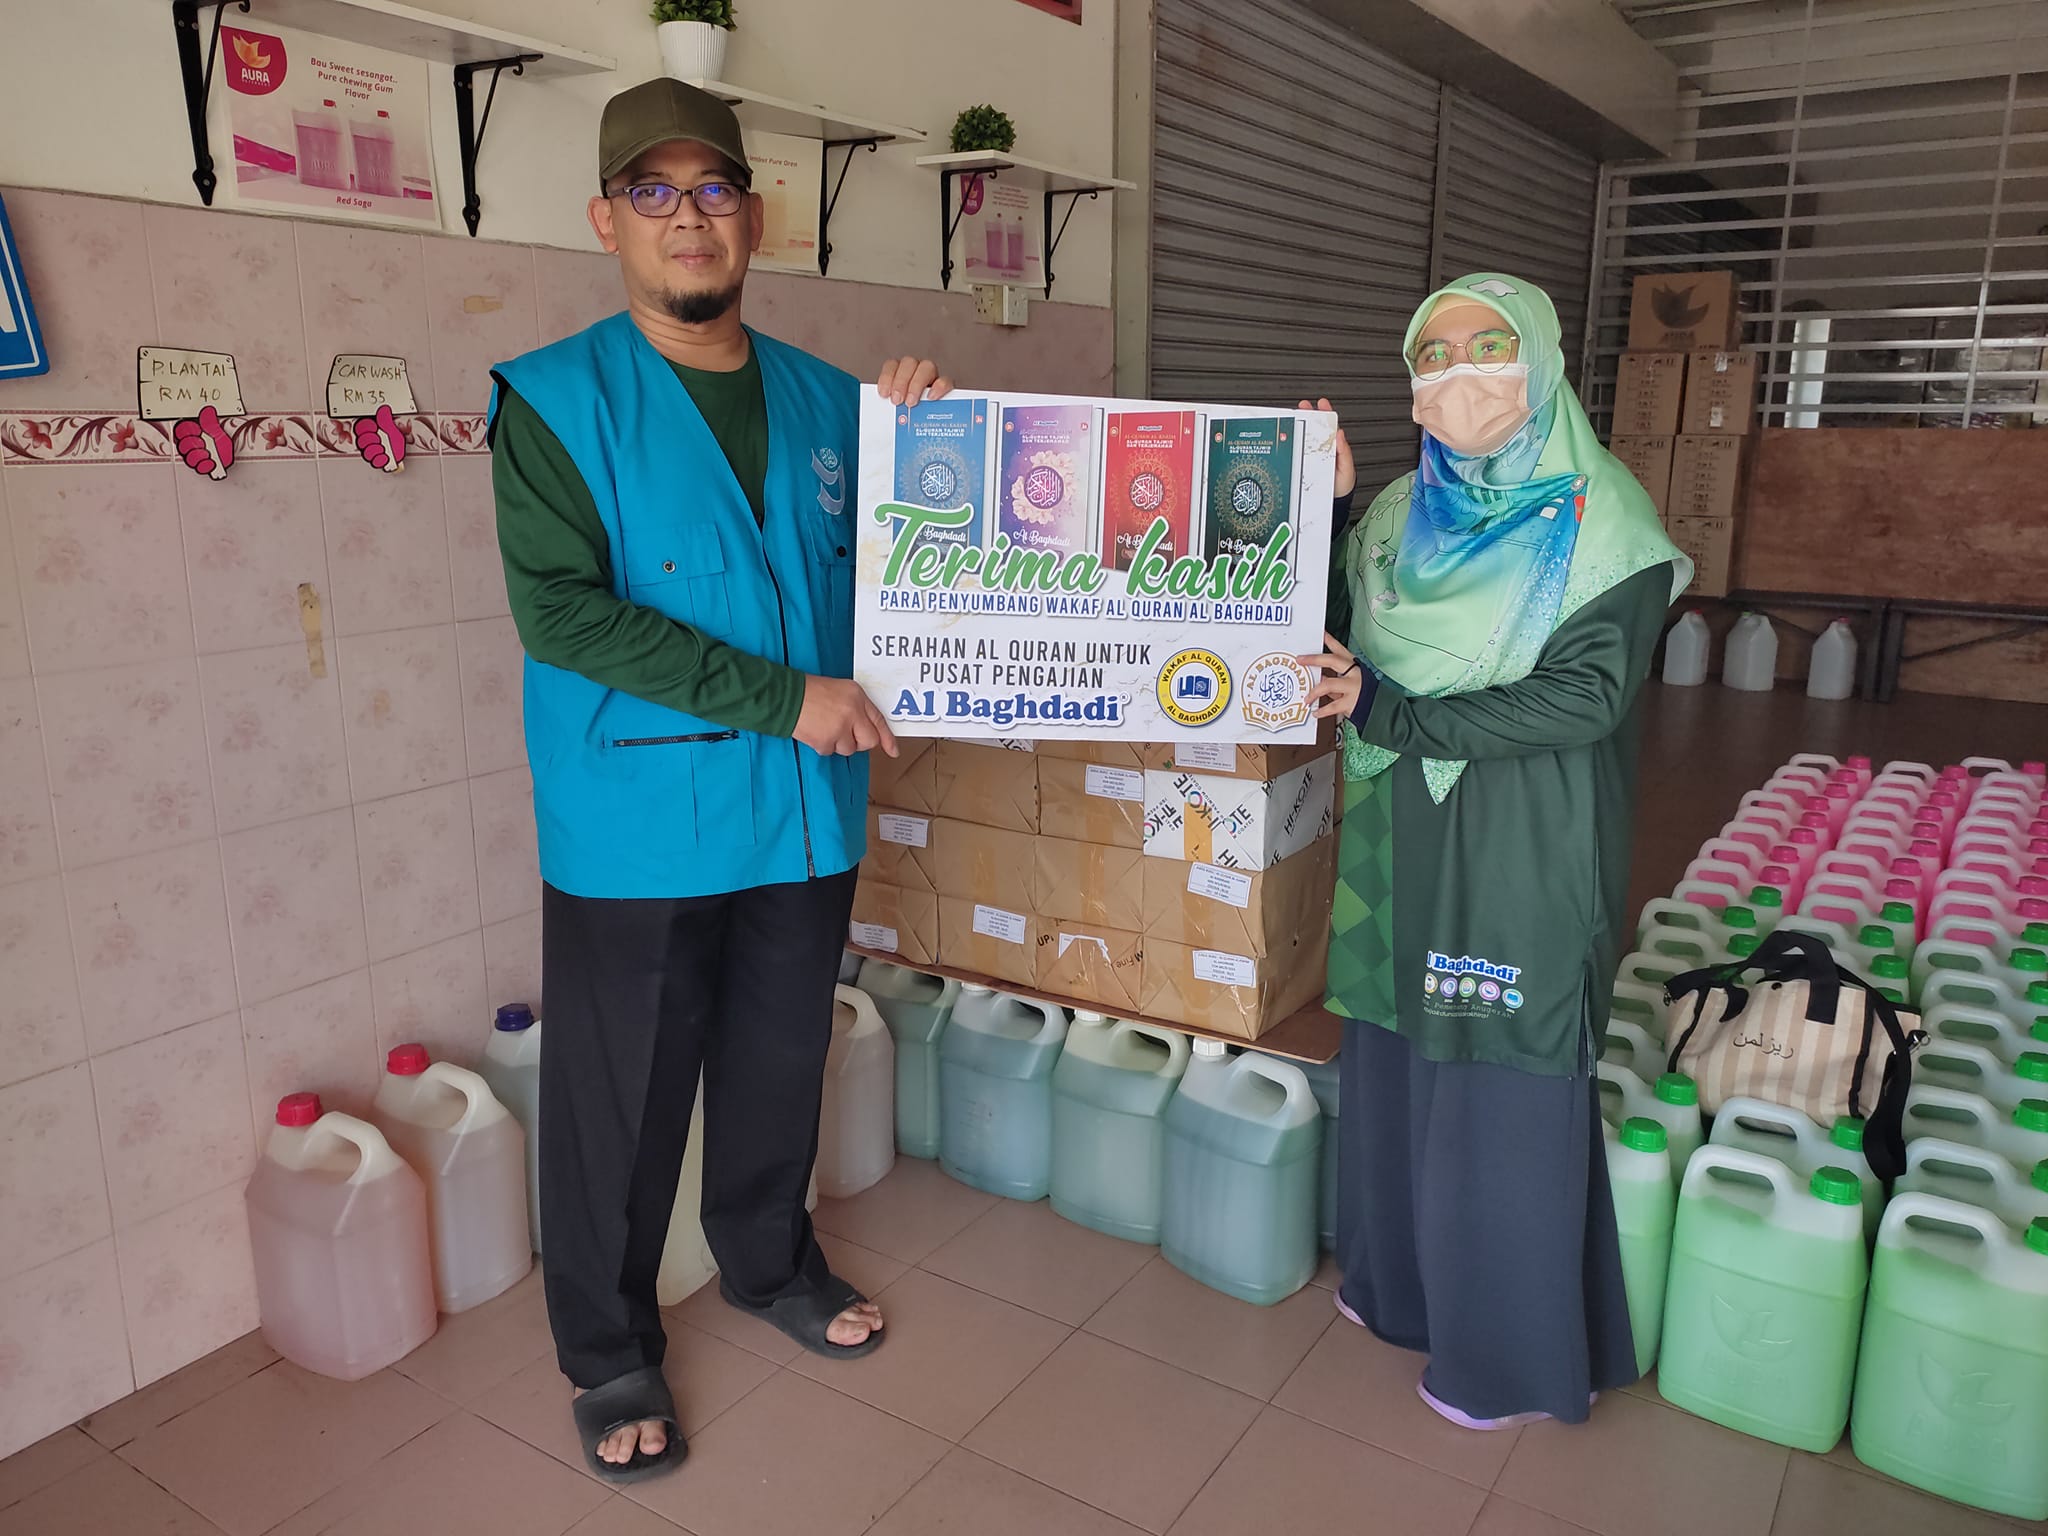 Edaran Al Quran Wakaf Di Sekitar Kuala Kangsar